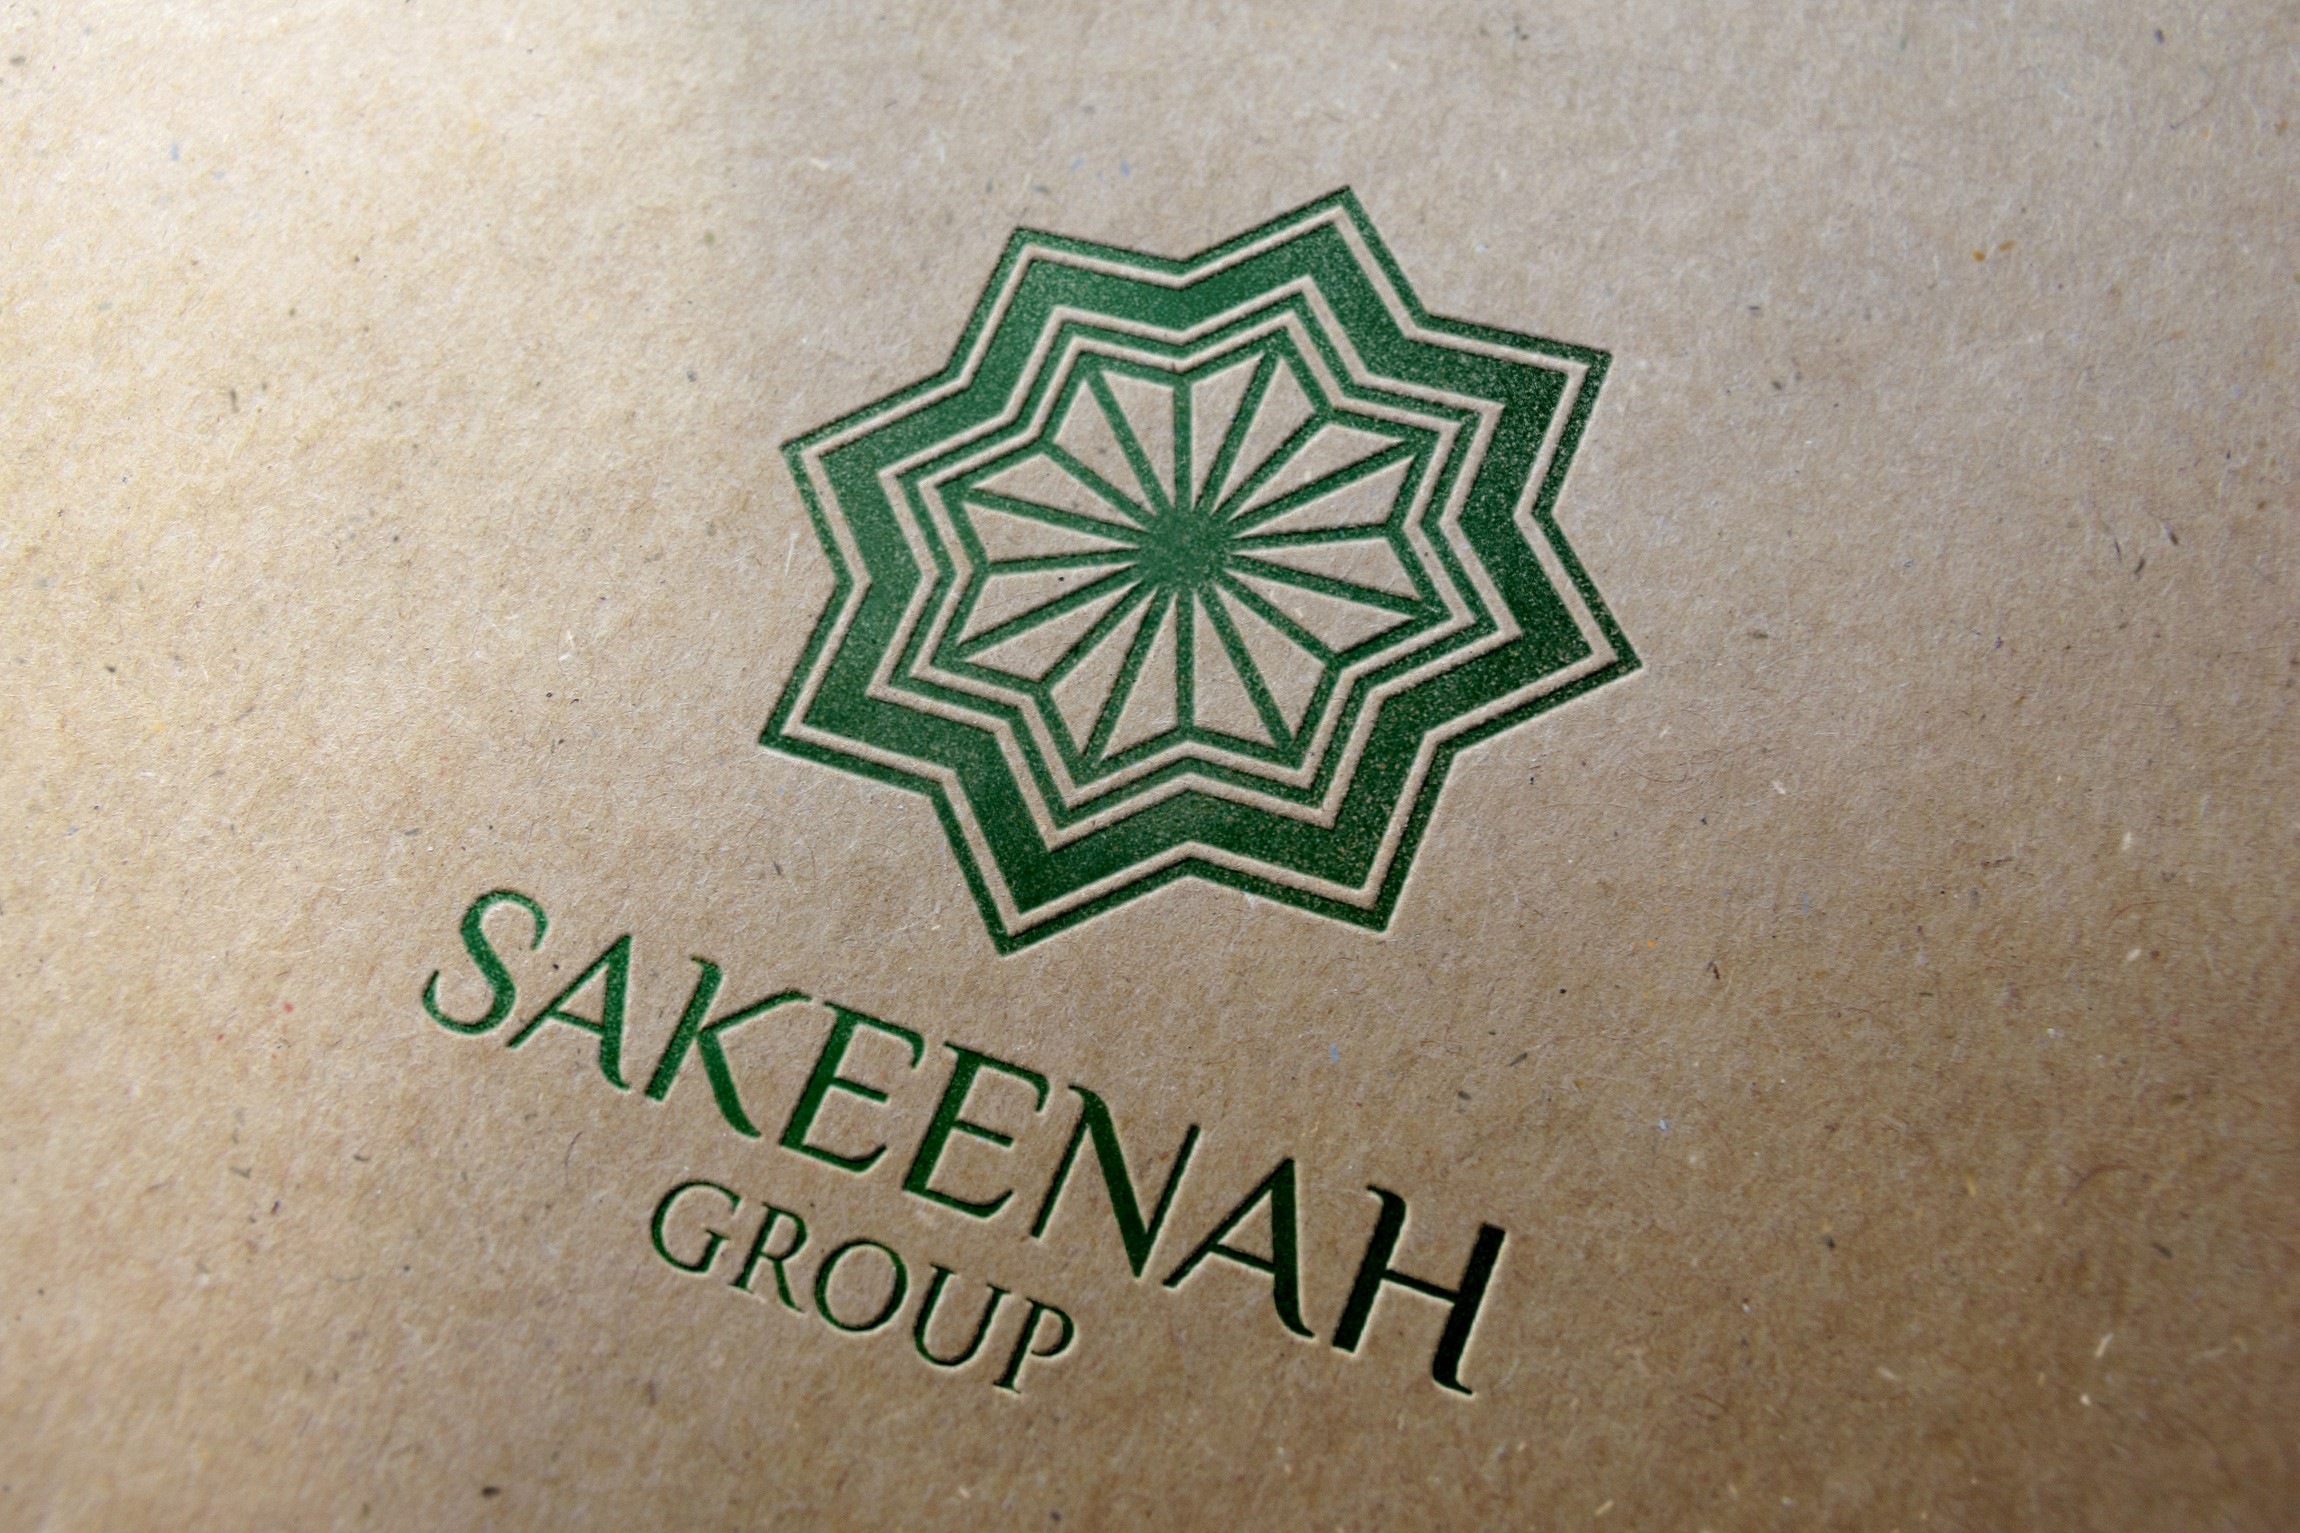 Sakeenah Group